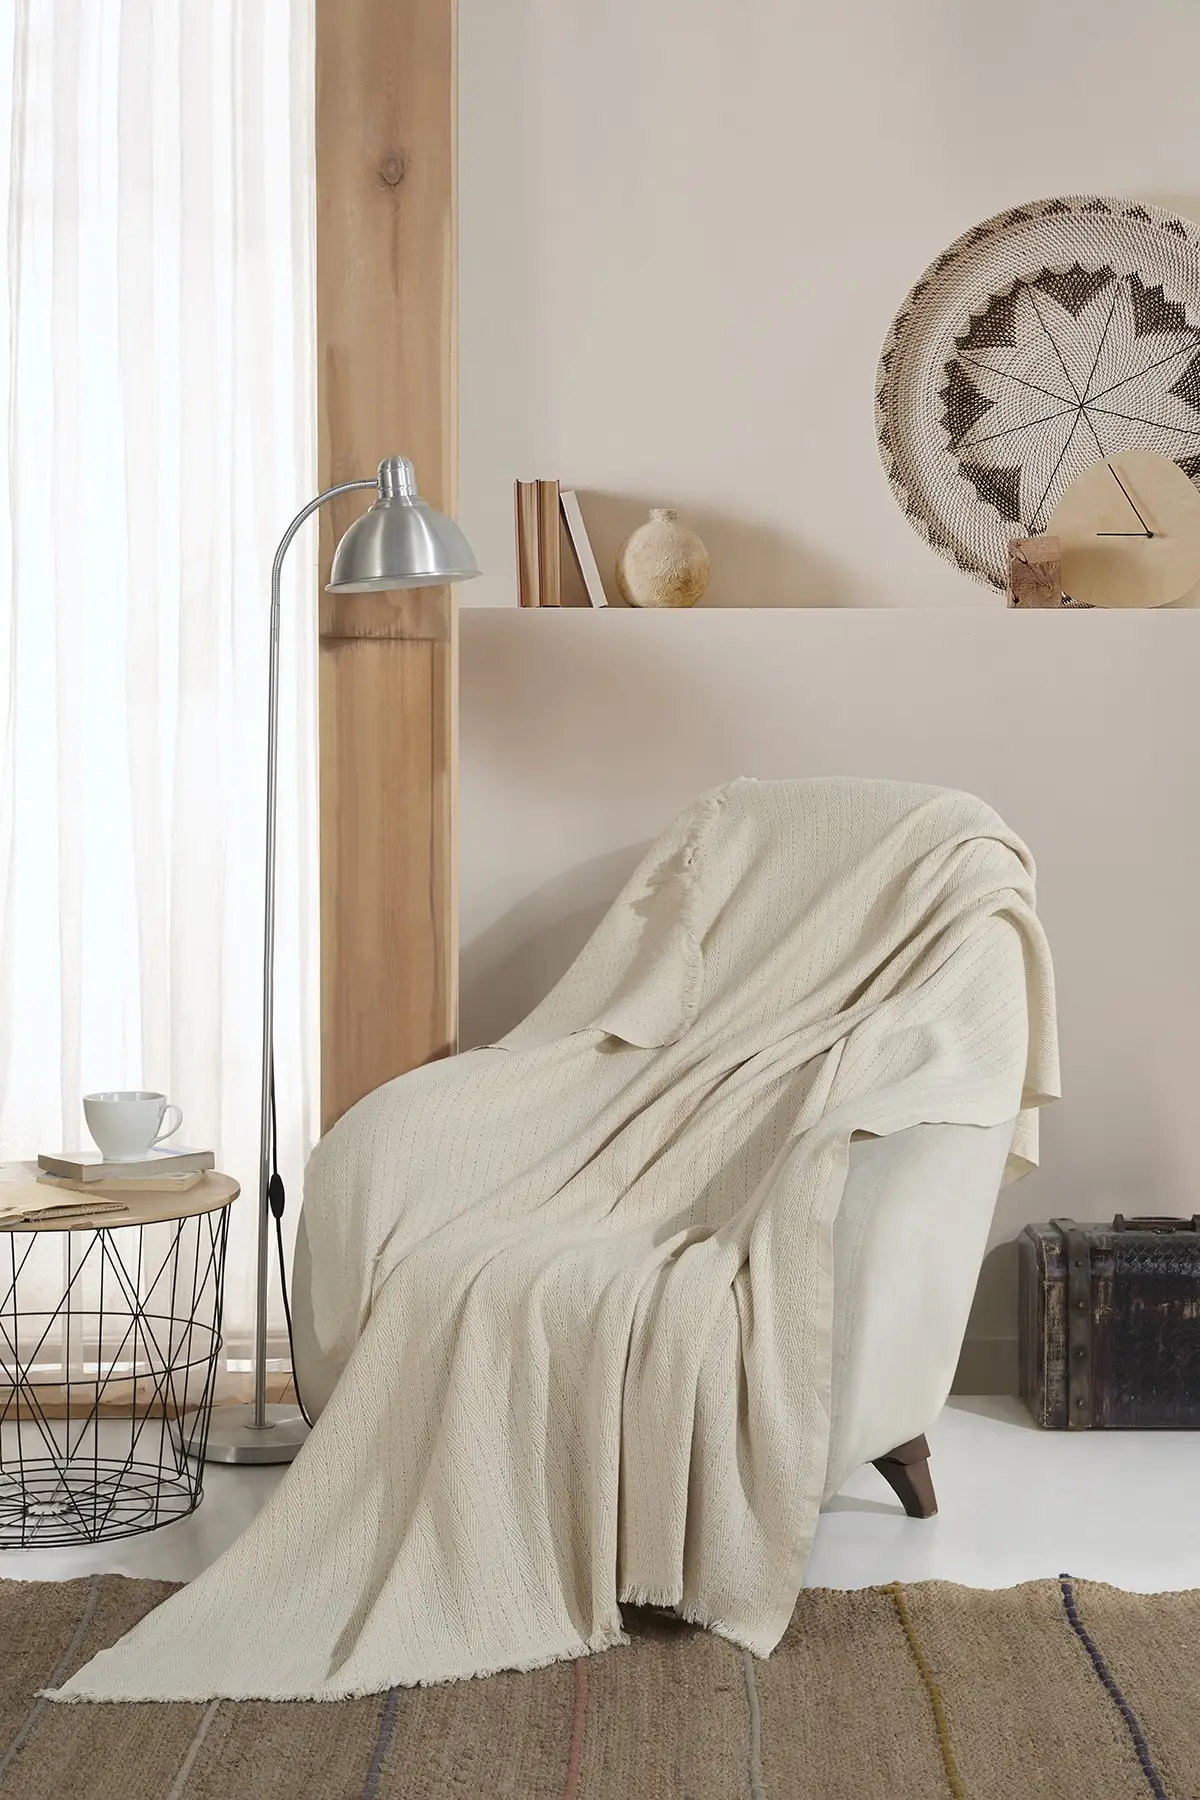 

Шаль из вера-сырой белой ткани для одного сиденья Бергера 150x200 см, одеяла для телевизора, хлопковый текстиль для отдыха, домашняя мебель